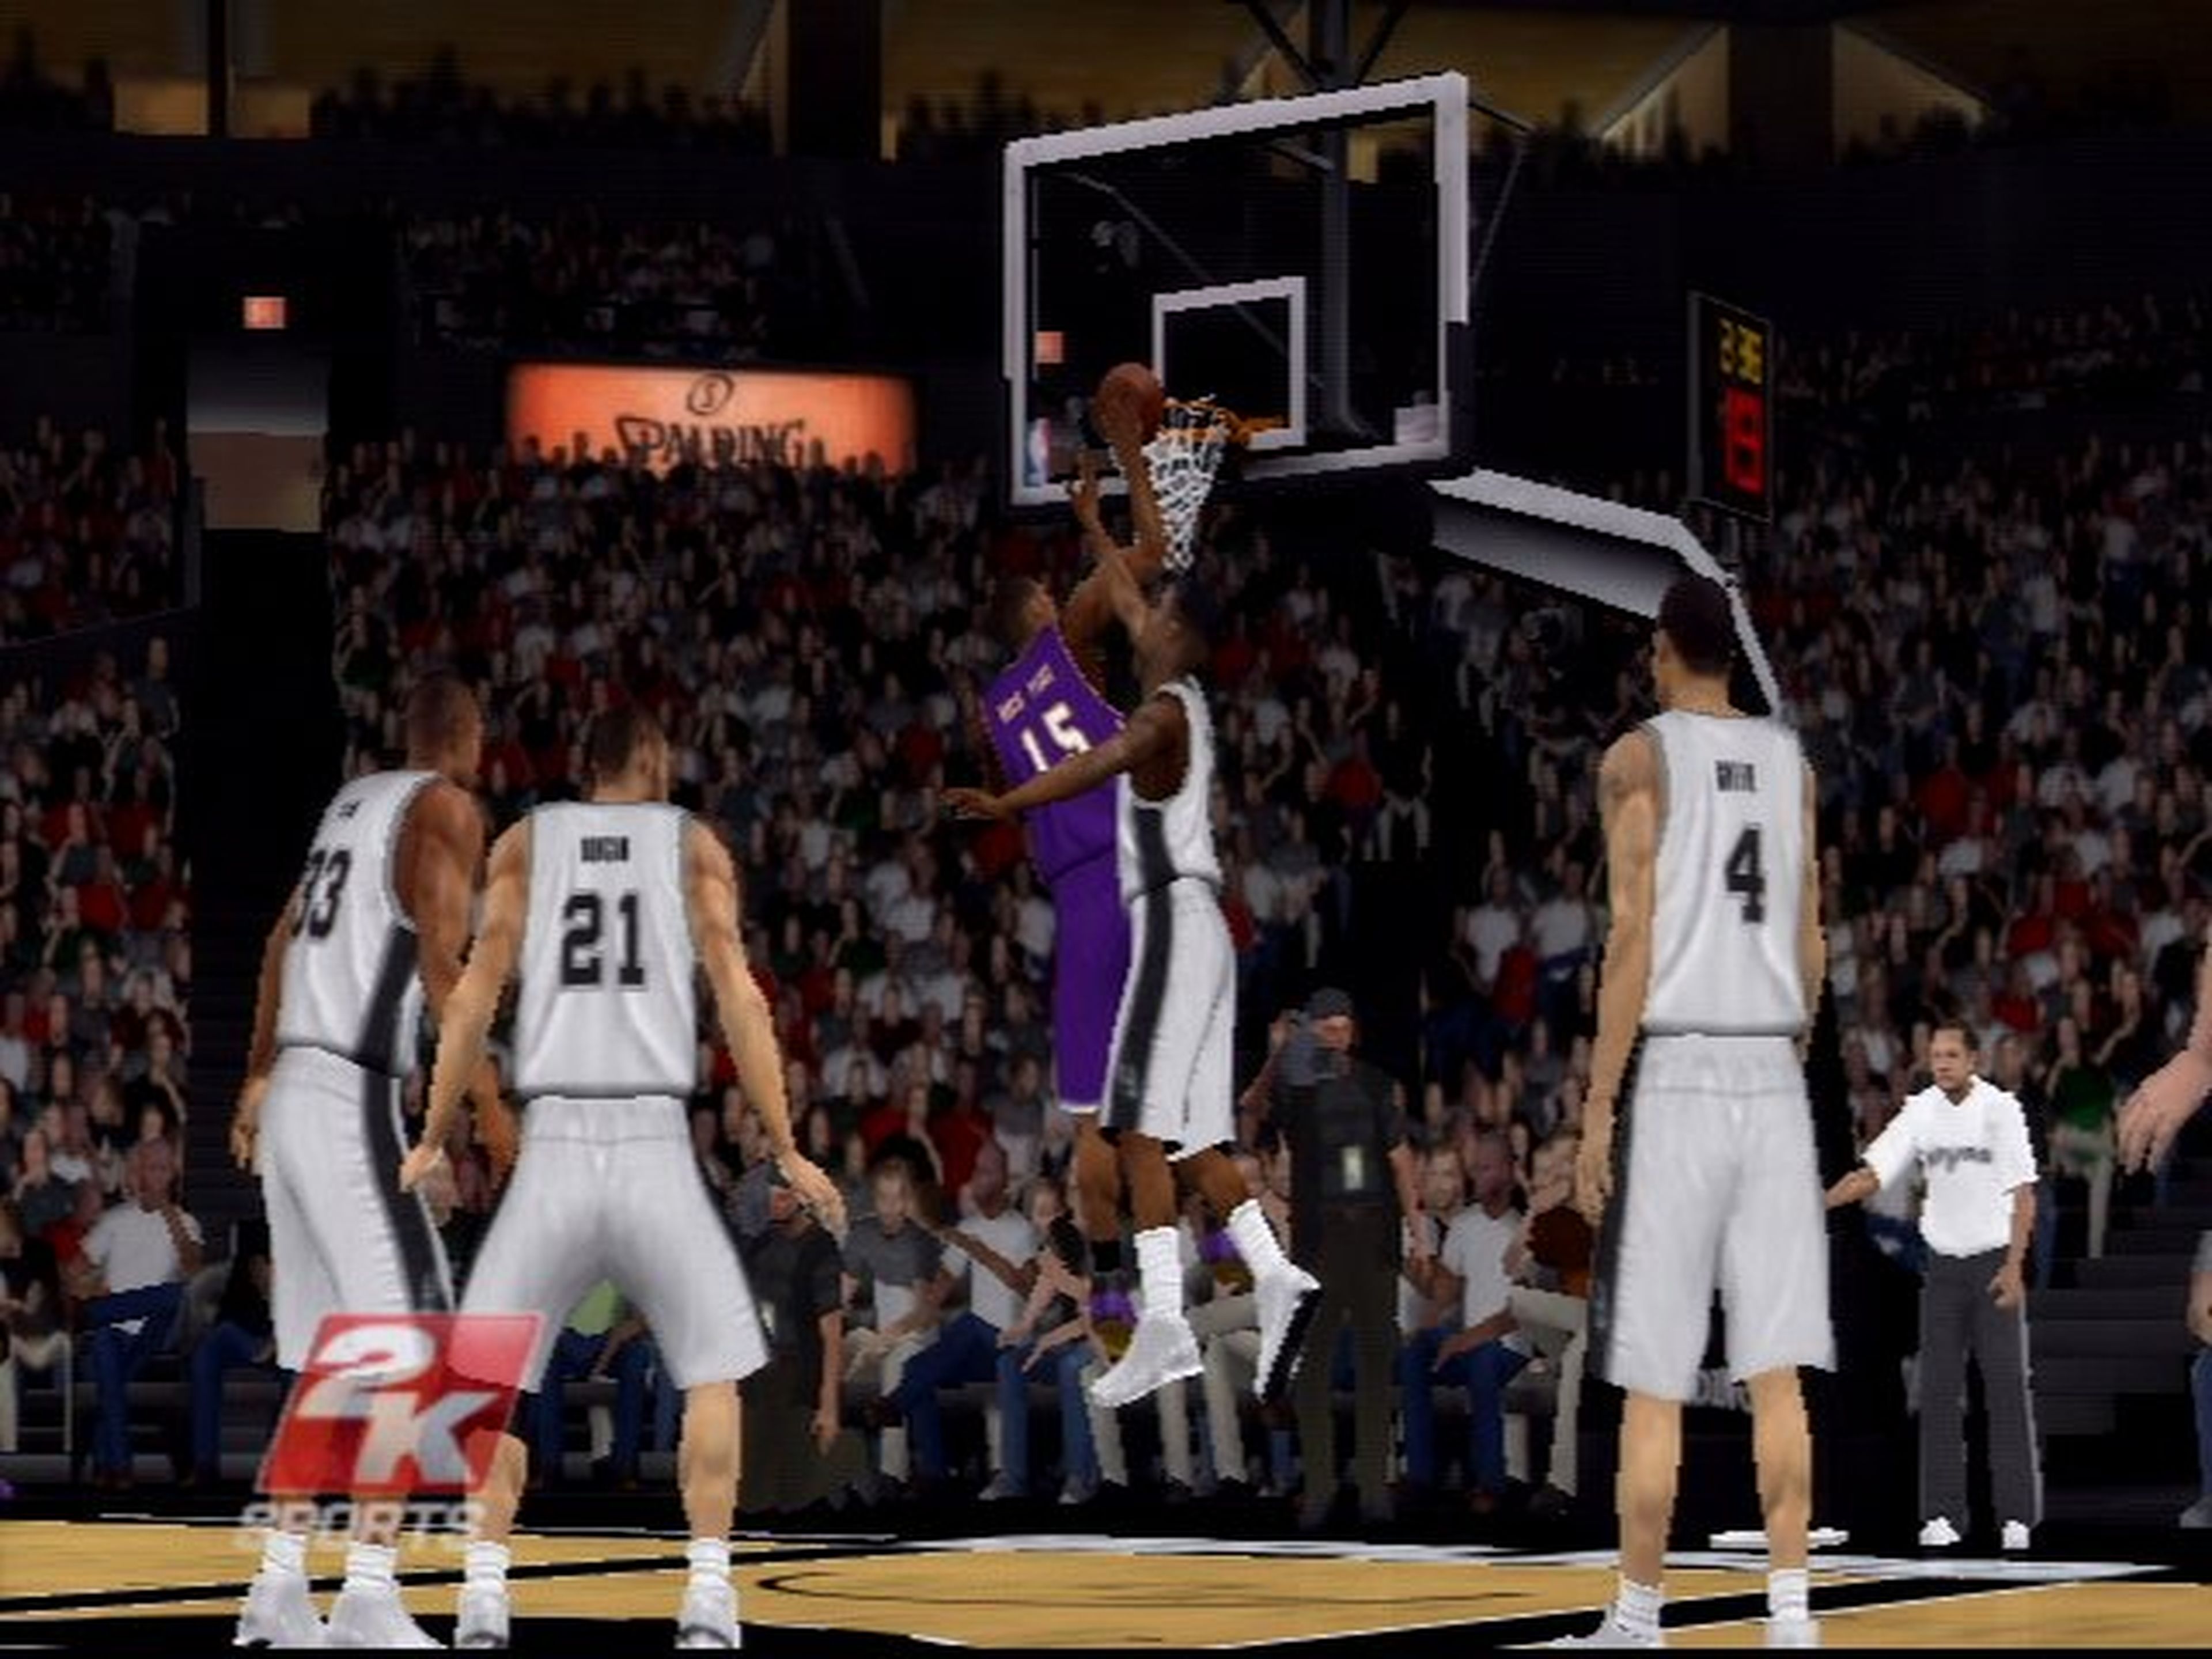 Análisis de NBA 2K13 en Wii